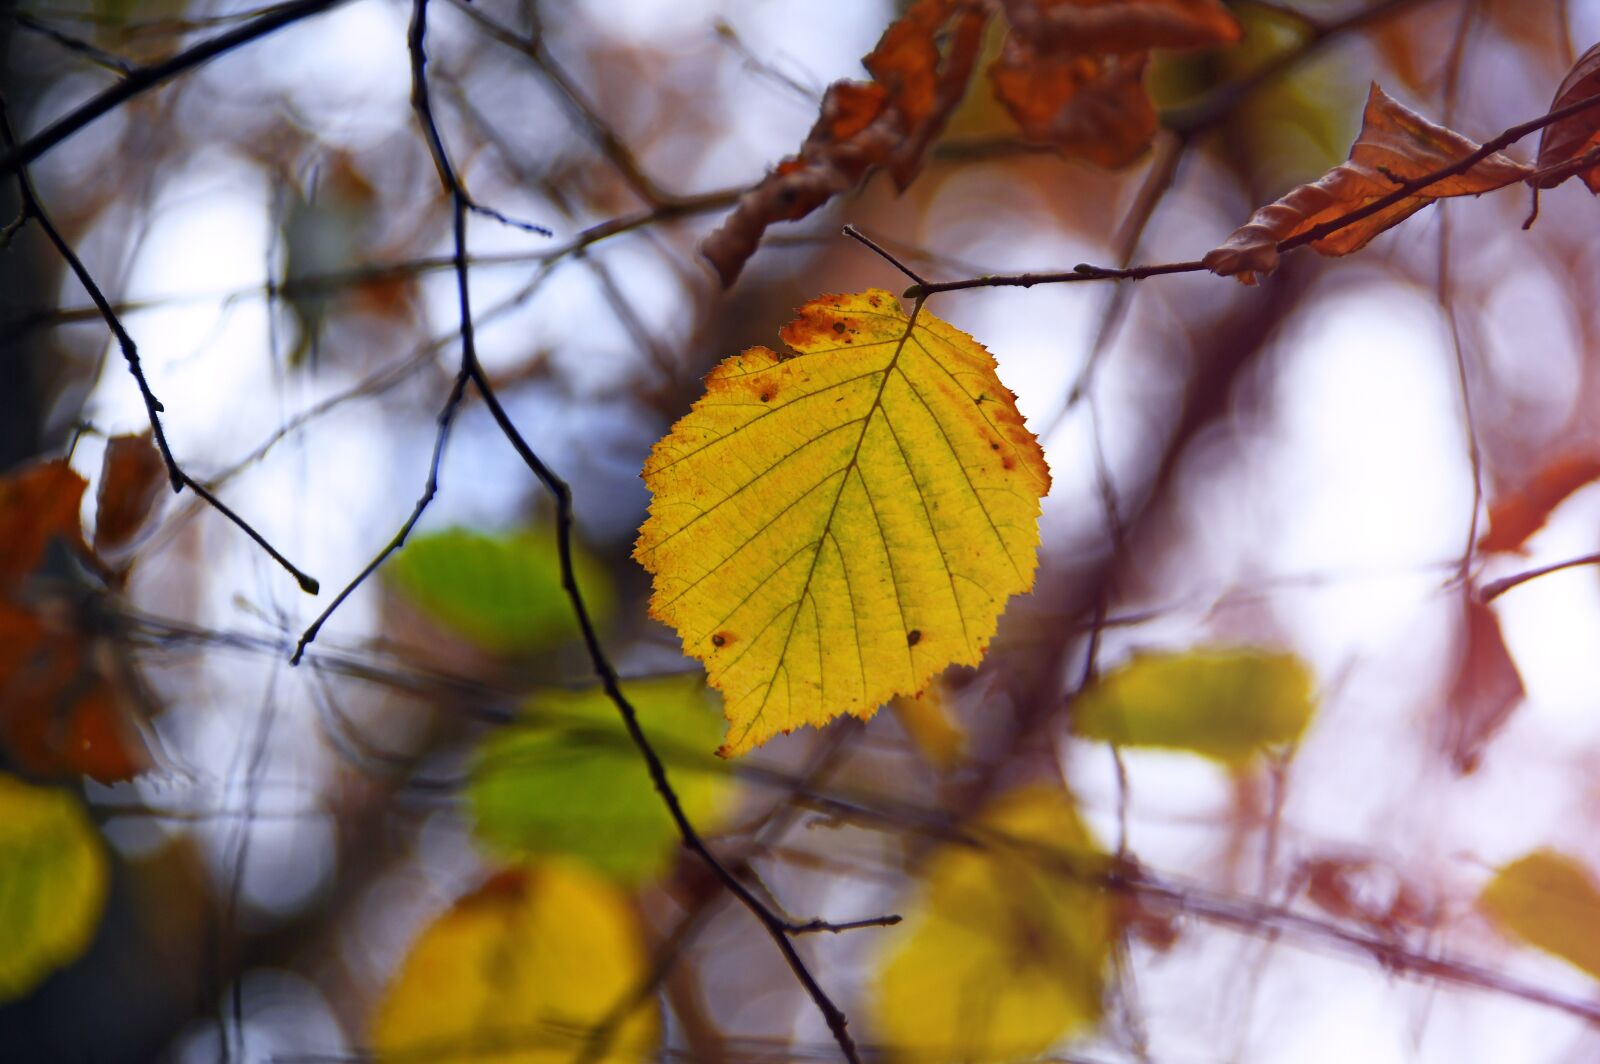 Nikon D3200 sample photo. Autumn, holidays, nature photography